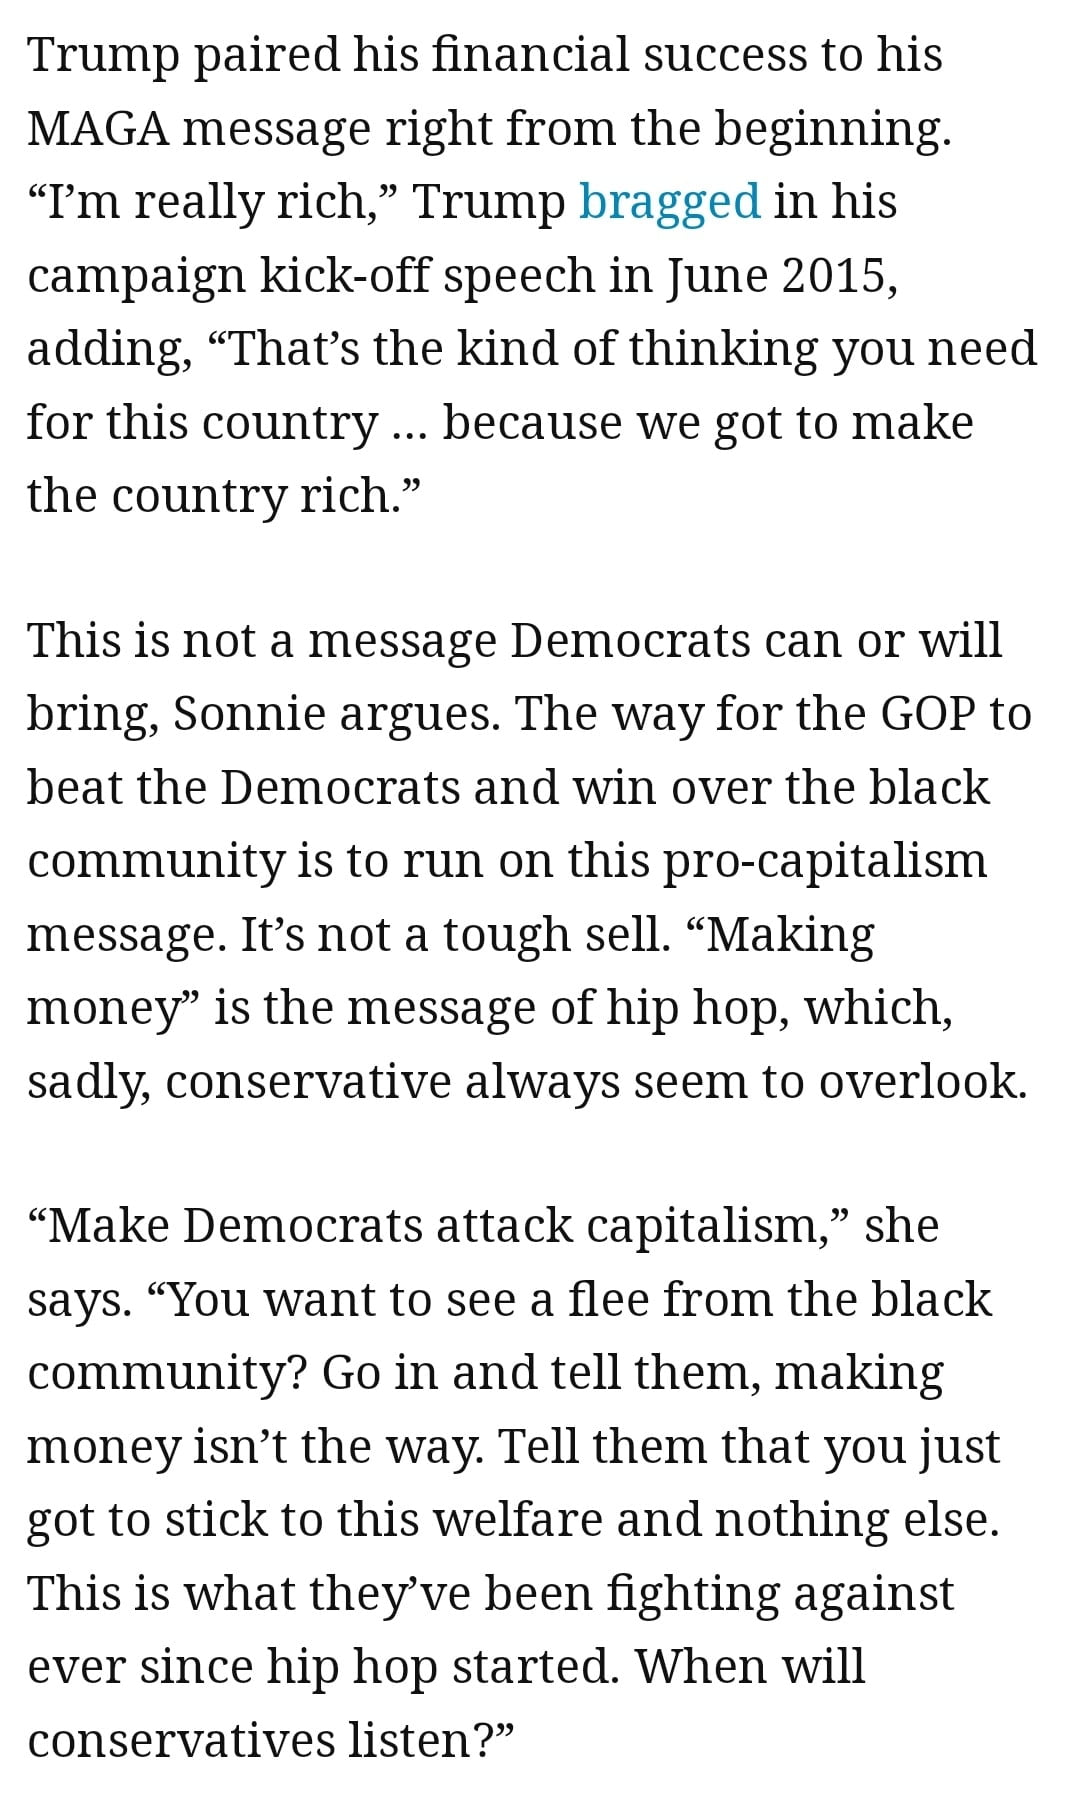 Make Democrats attack Capitalism